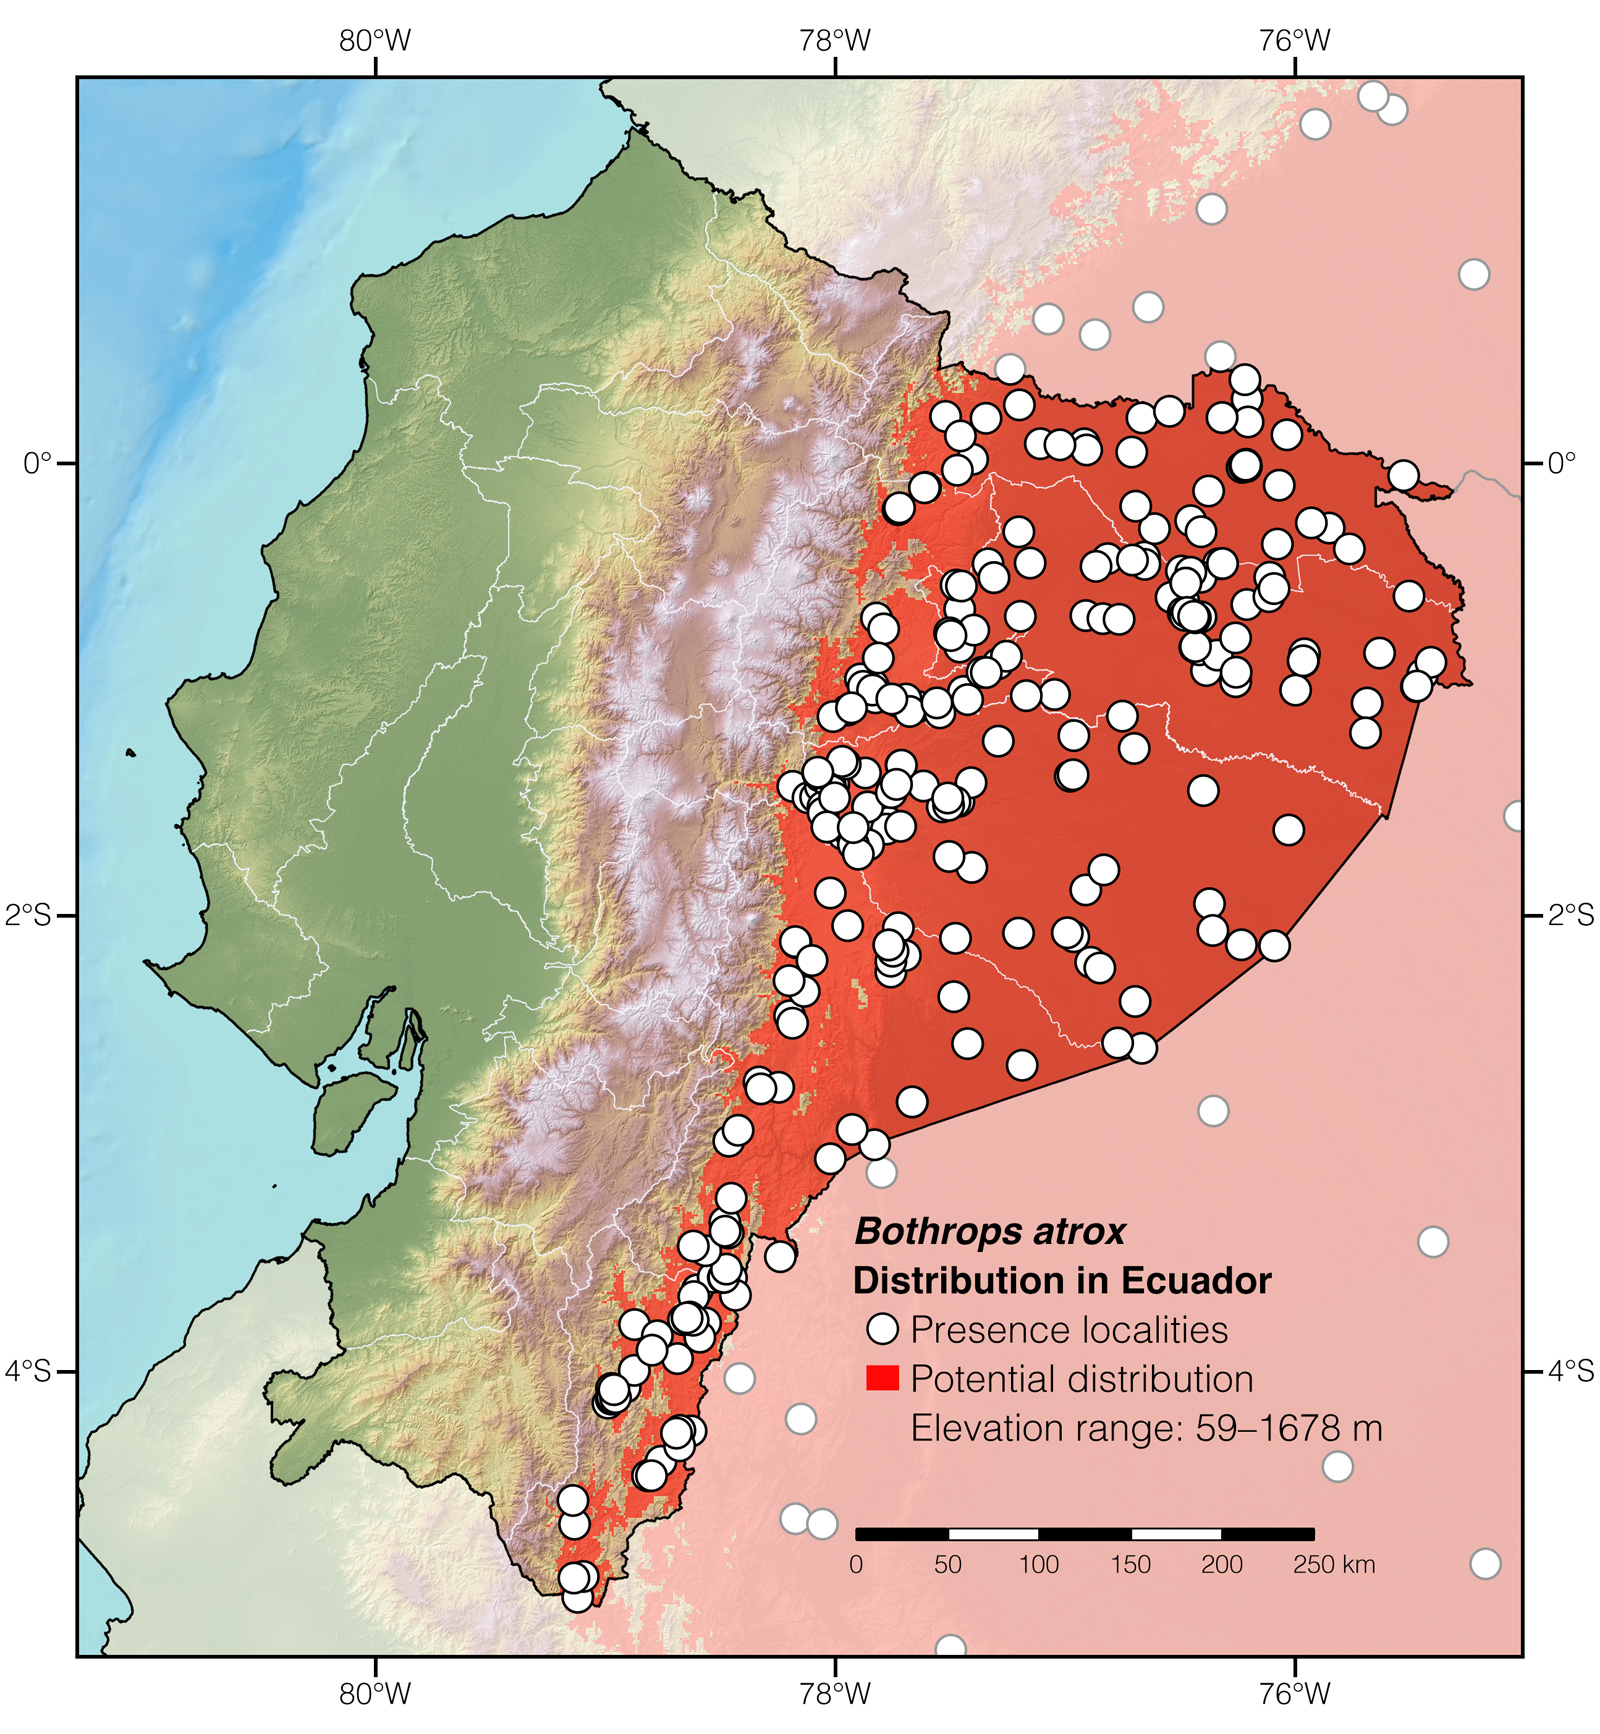 Distribution of Bothrops atrox in Ecuador